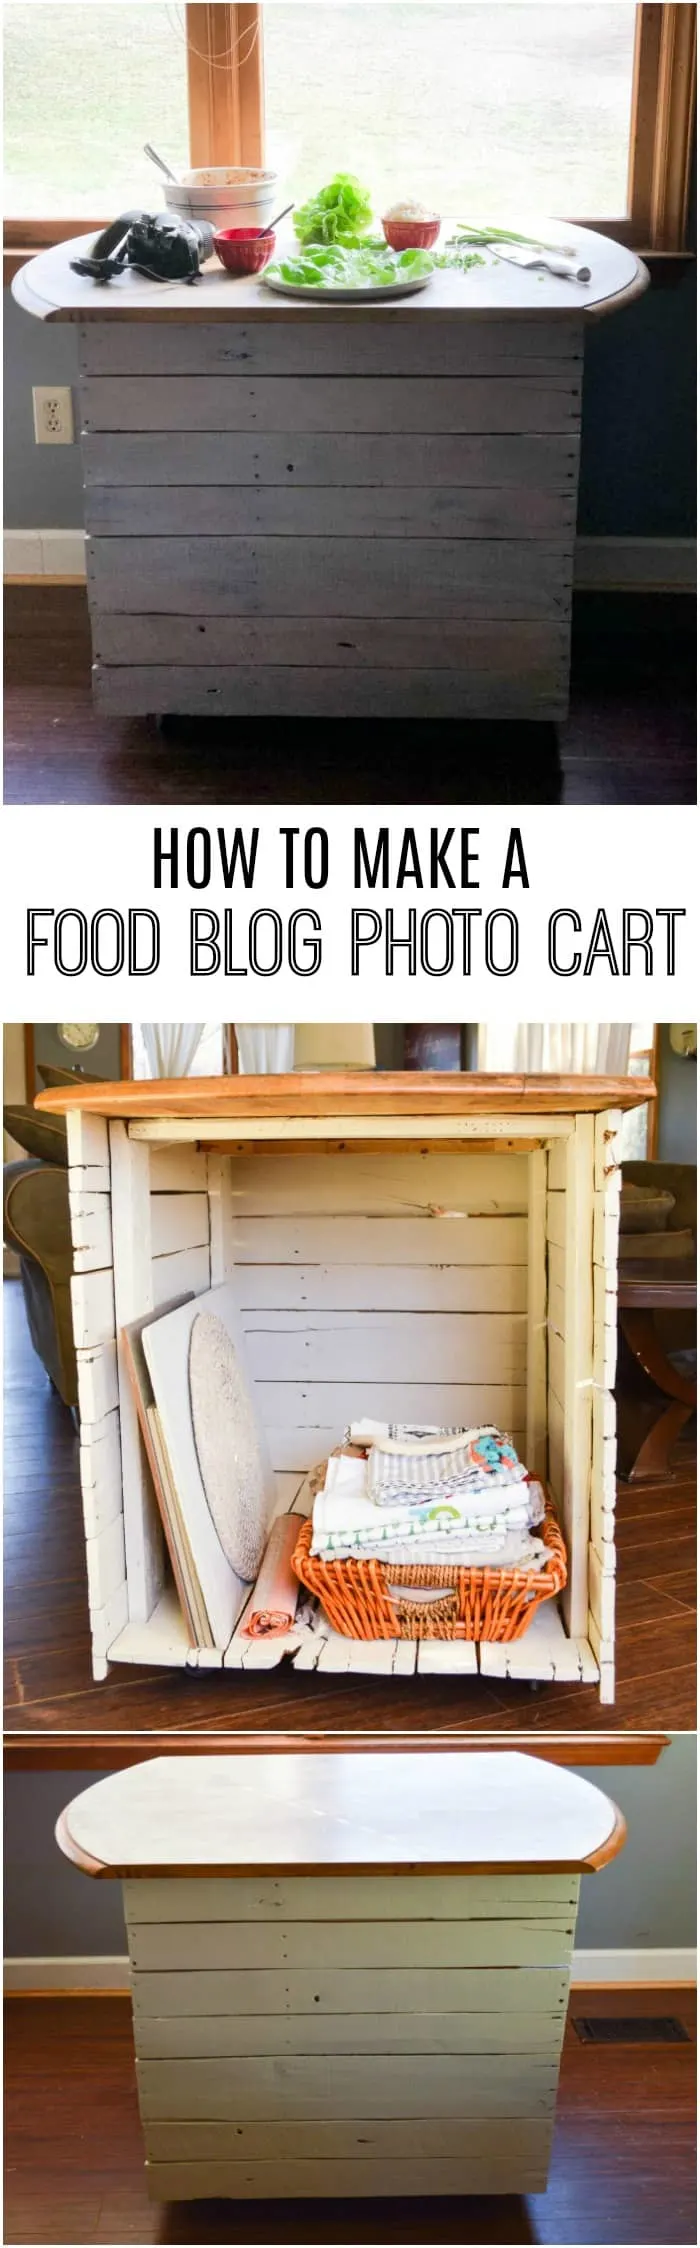 Food Blog Photo Cart